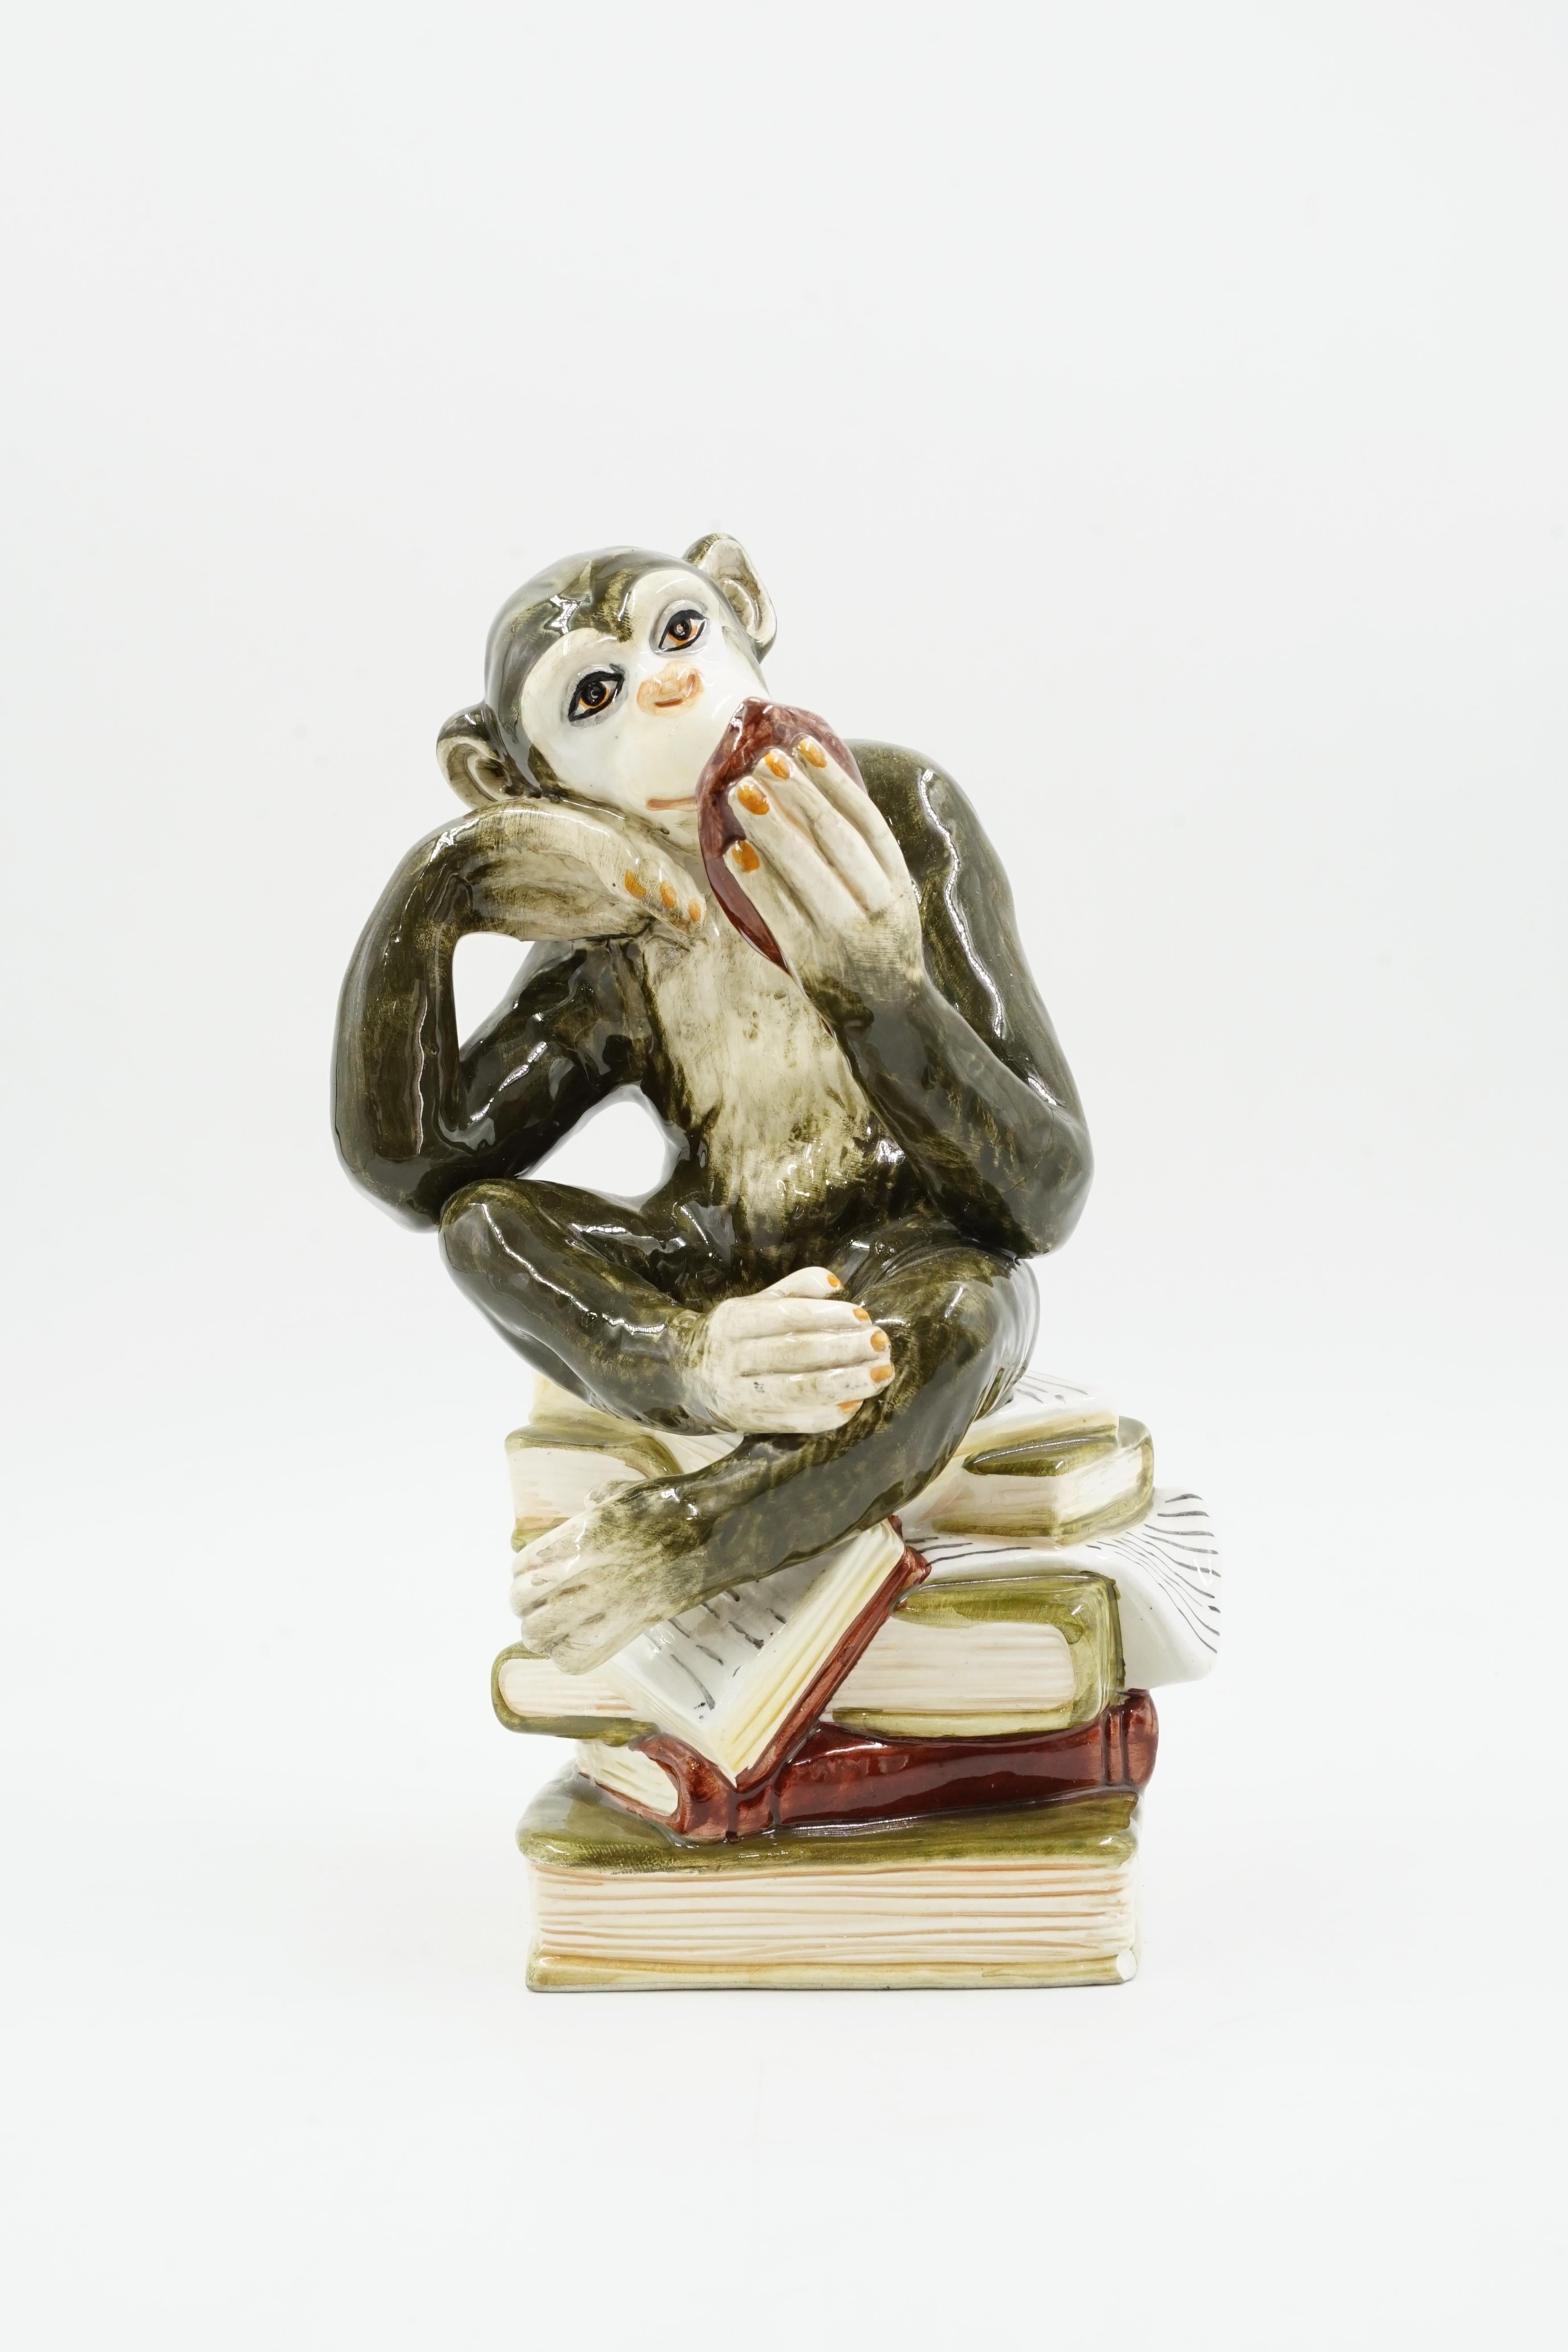 Sculpture de singe en céramique
Modèle du singe savant
figure inhabituelle d'un singe assis sur des livres et se regardant dans le miroir
peint à la main
excellent état
circa 1950 origine Allemagne
matériaux céramiques émaillés
L'émail et la